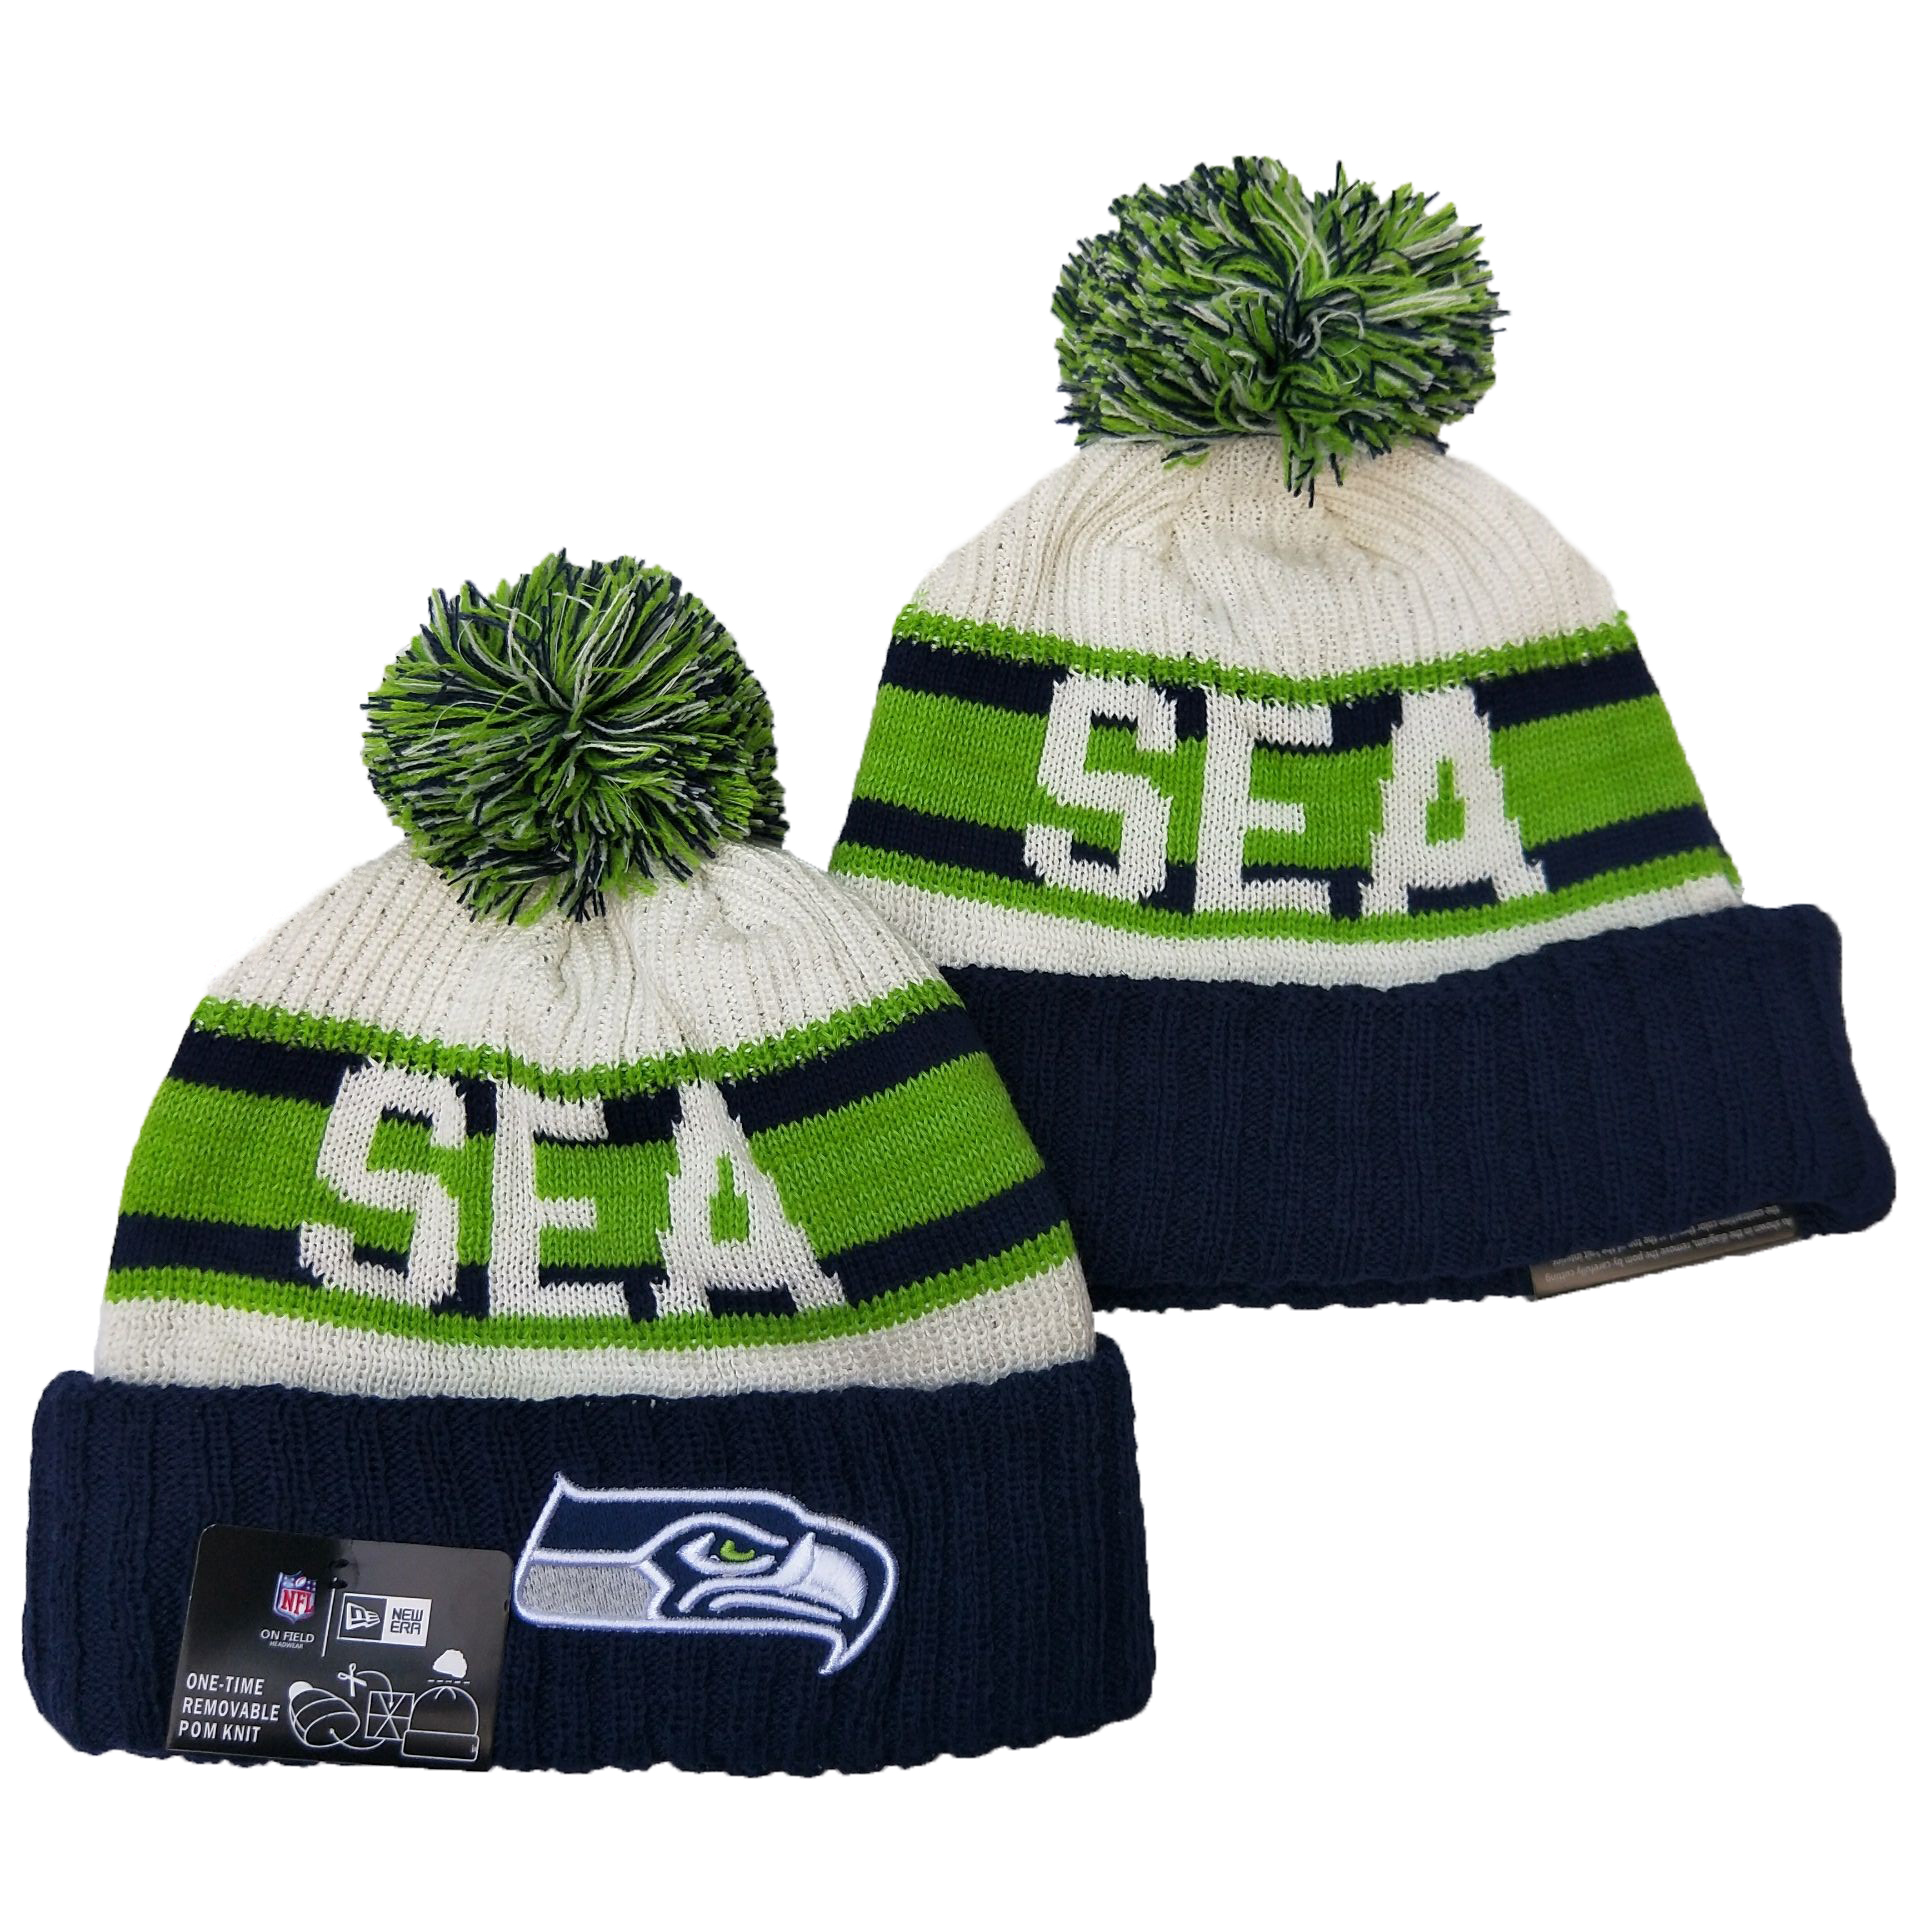 Seattle Seahawks Knit Hats 076